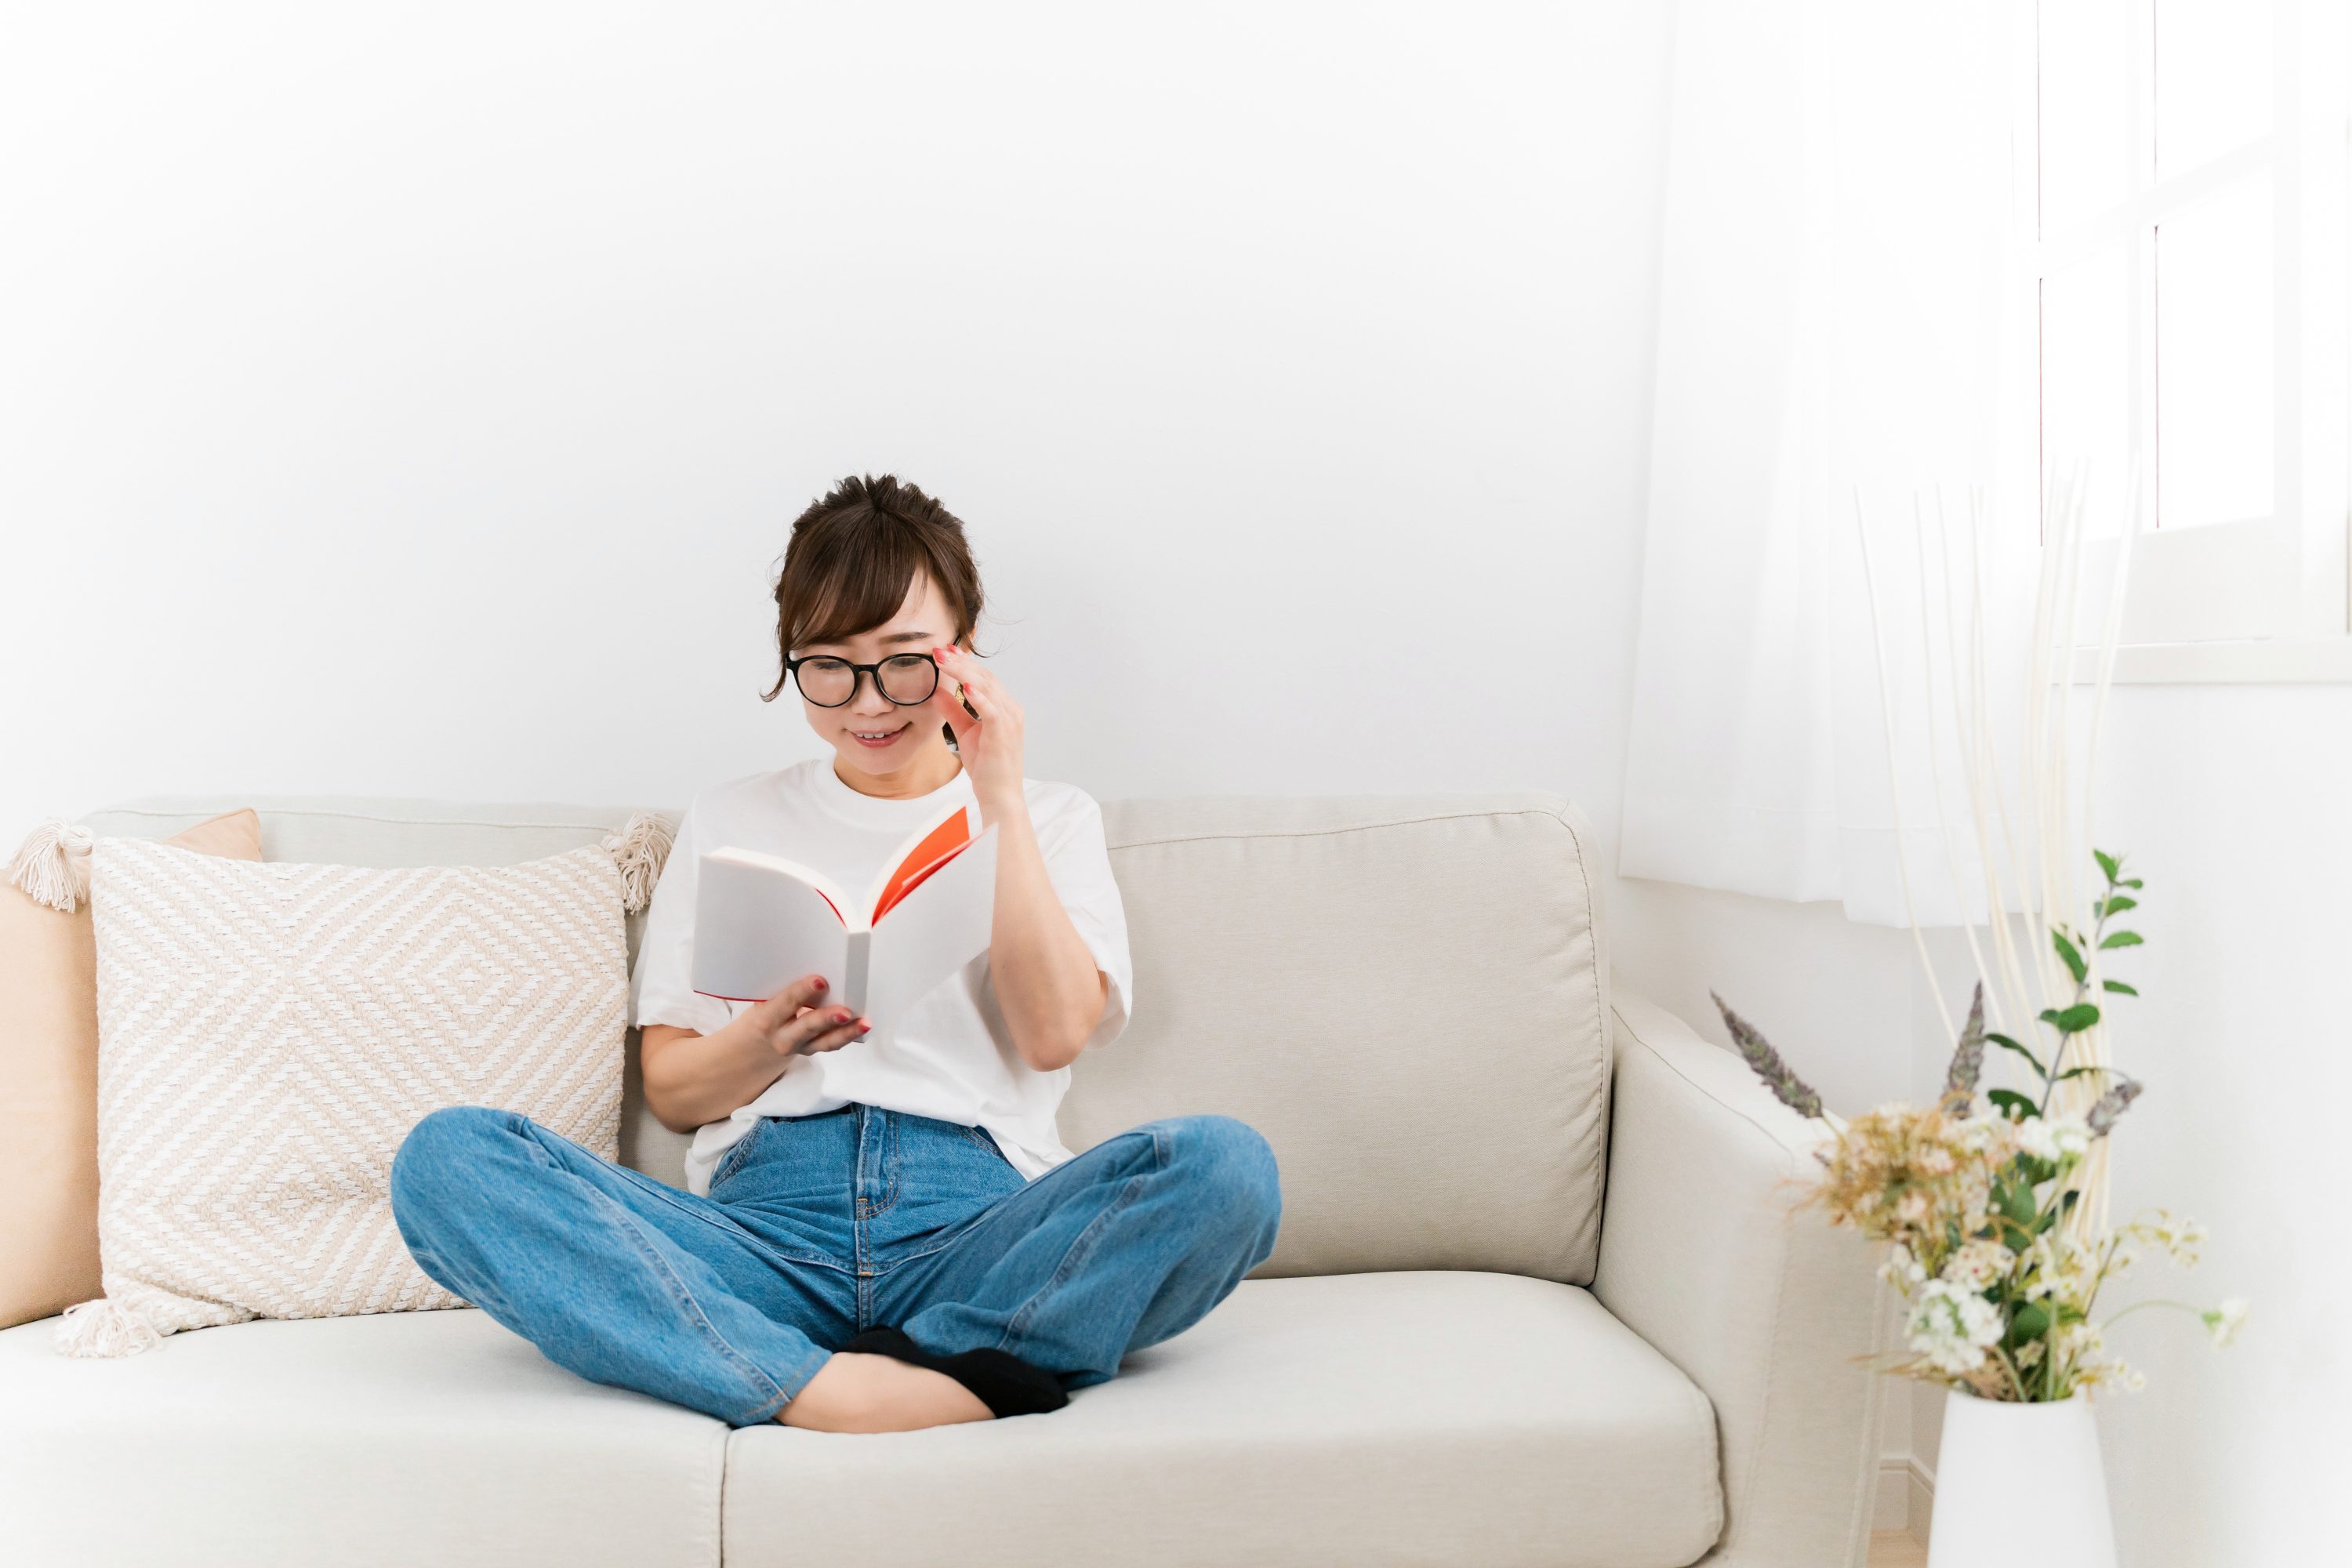 ソファーの上でマンガを読む女性のイメージ